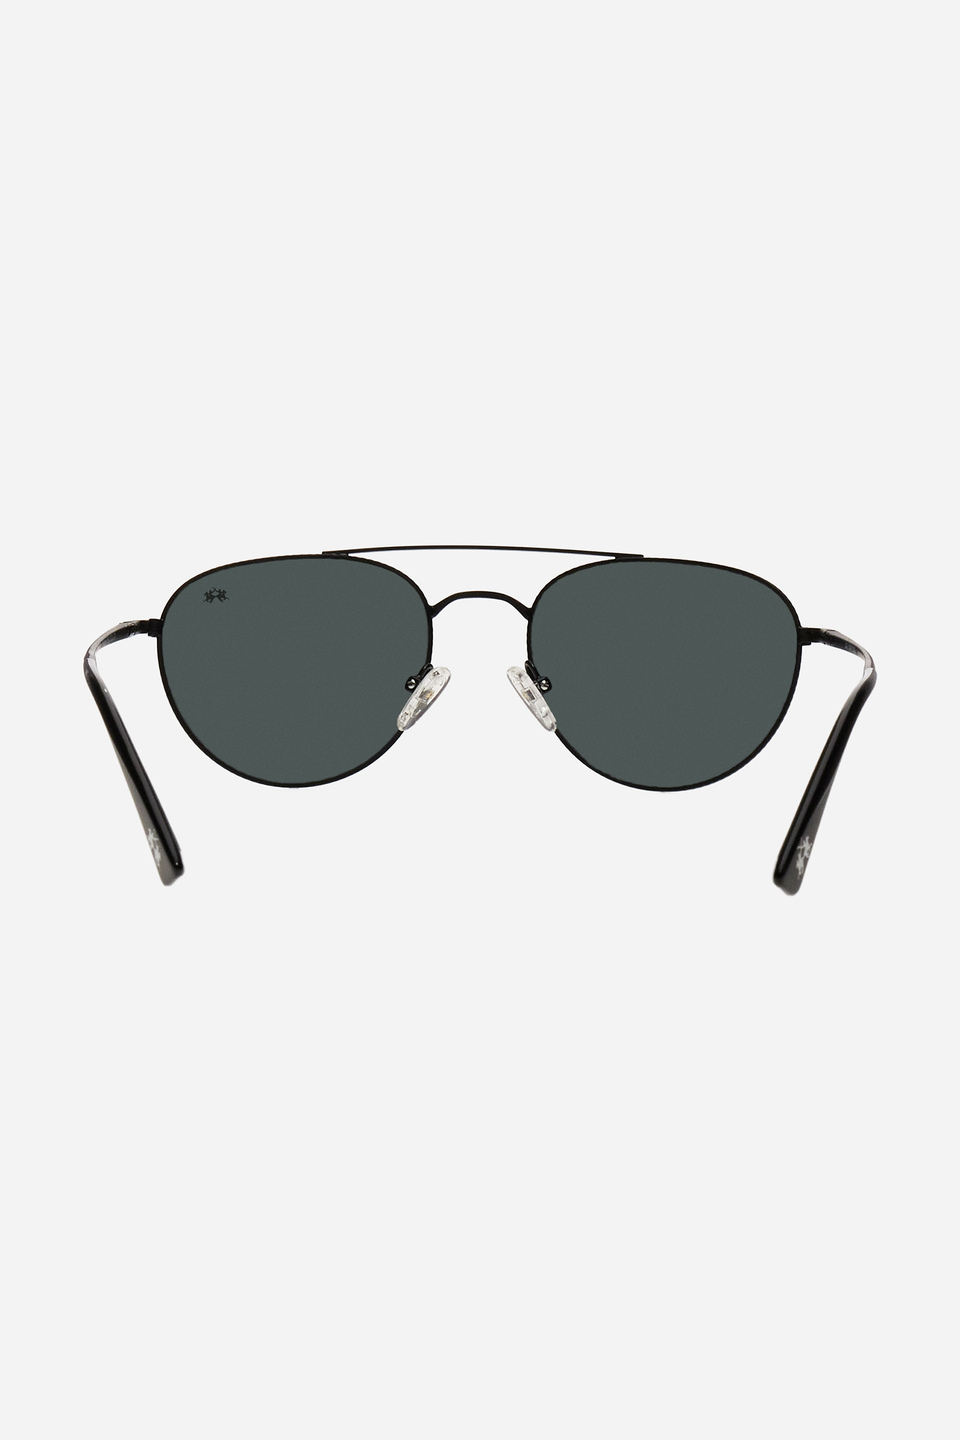 Men's drop-shaped metal frame sunglasses | La Martina - Official Online Shop